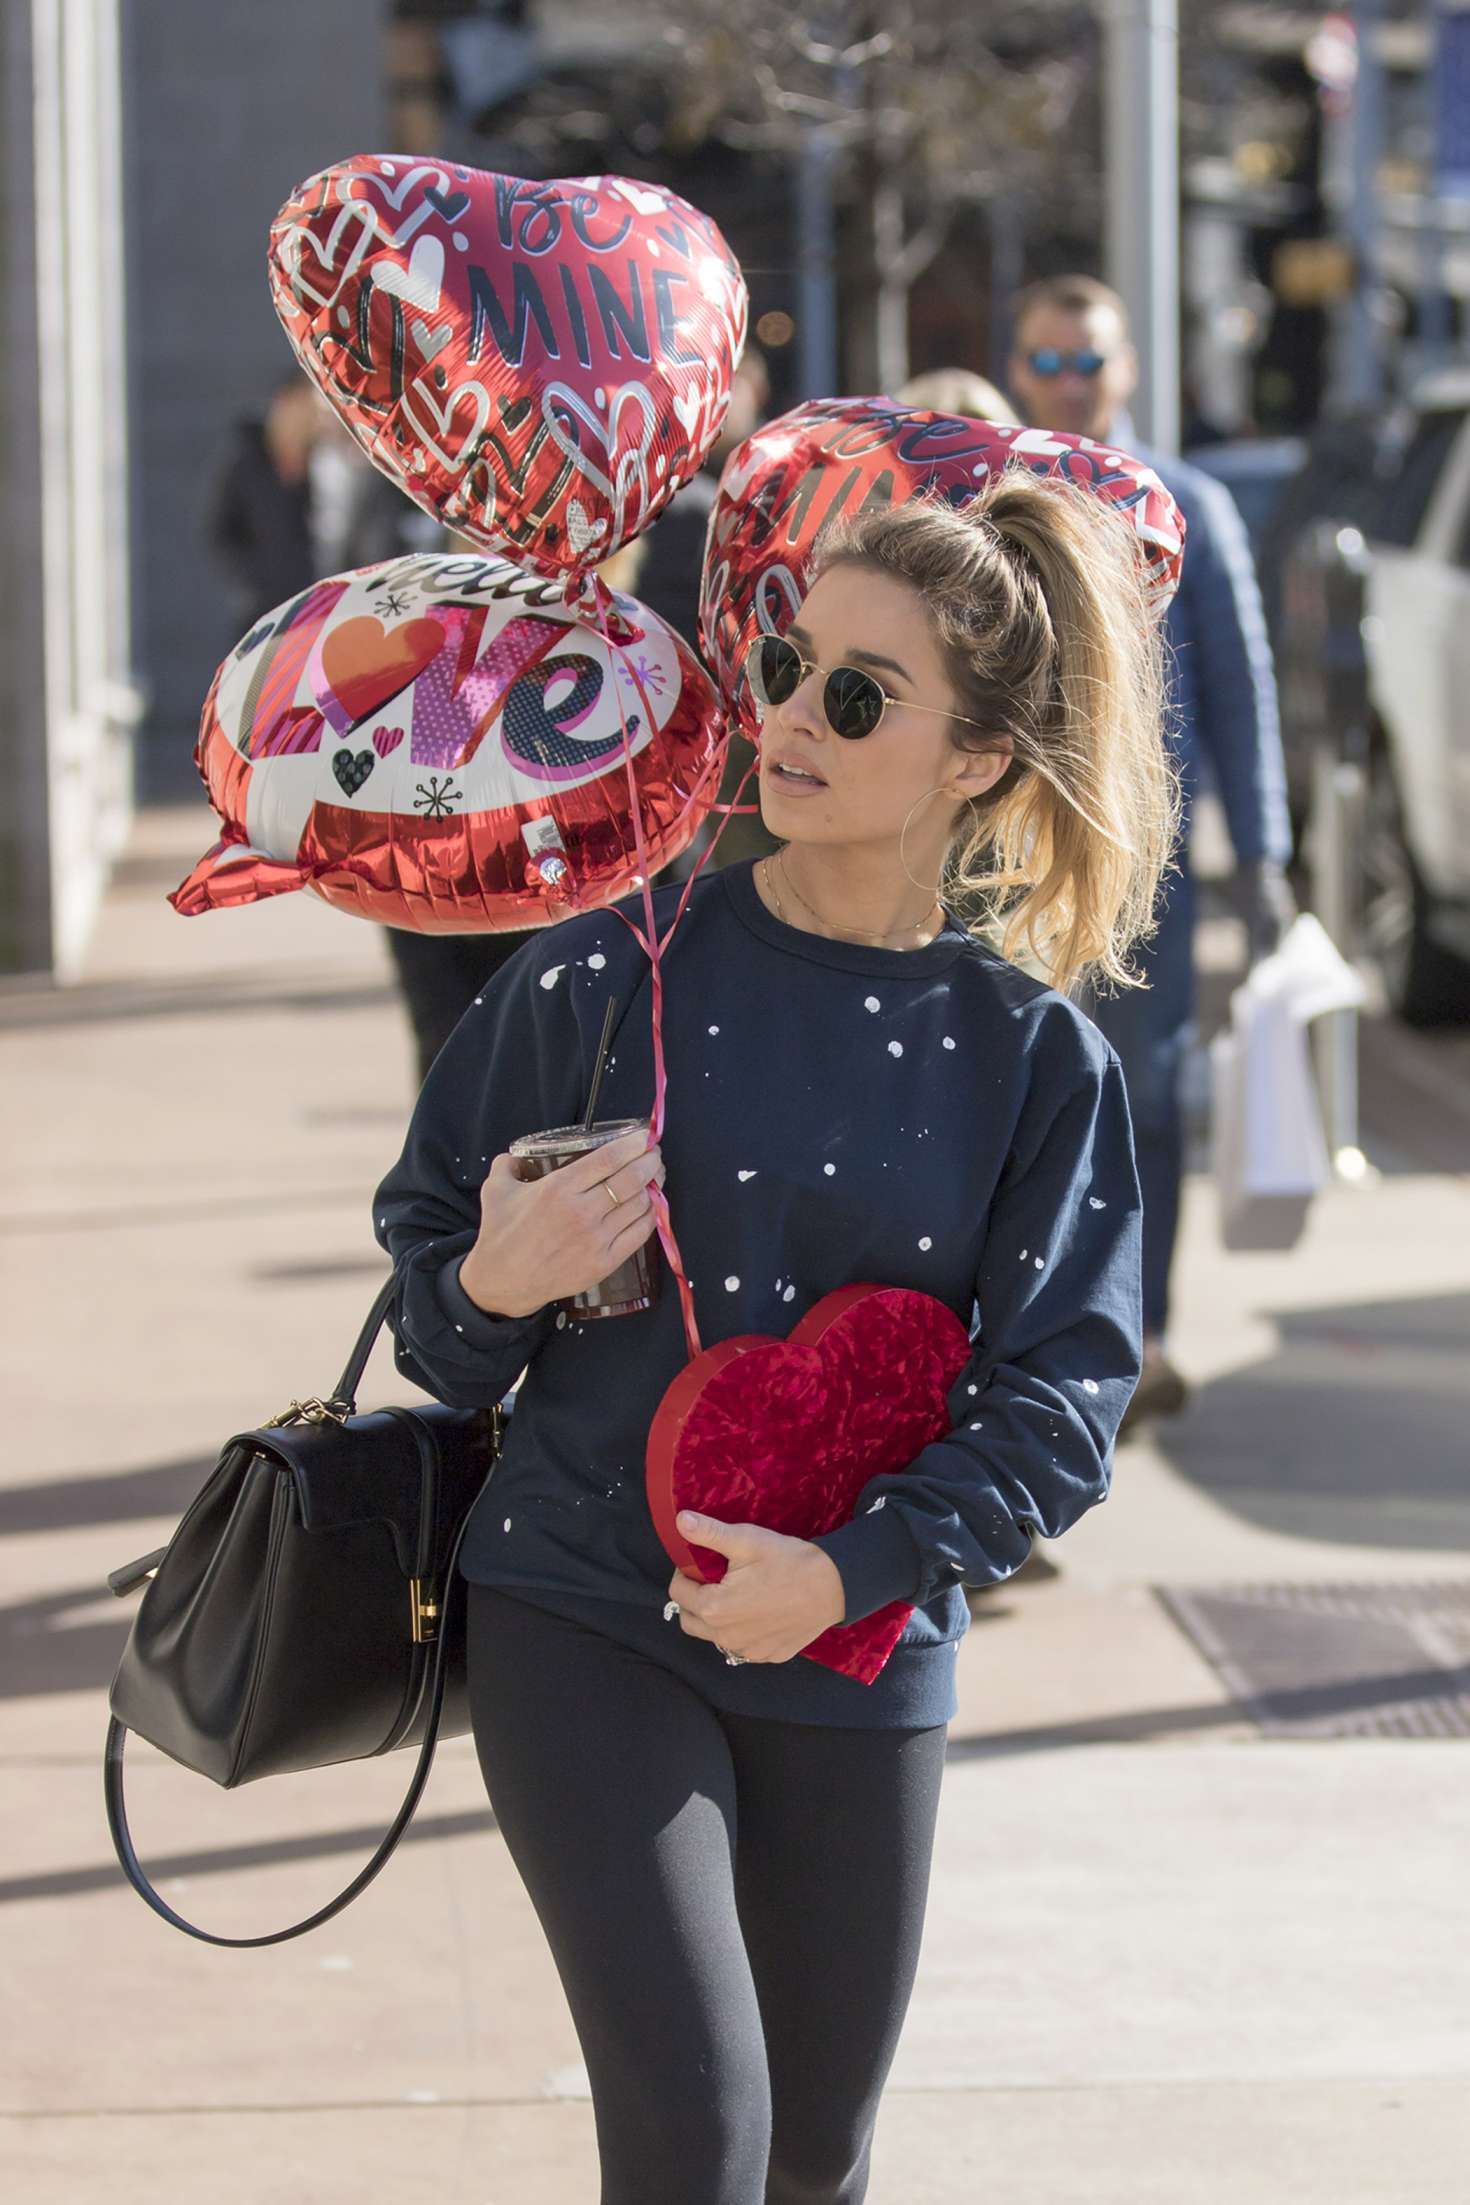 Jessie James Decker with some Valentine`s Day balloons in Nashville